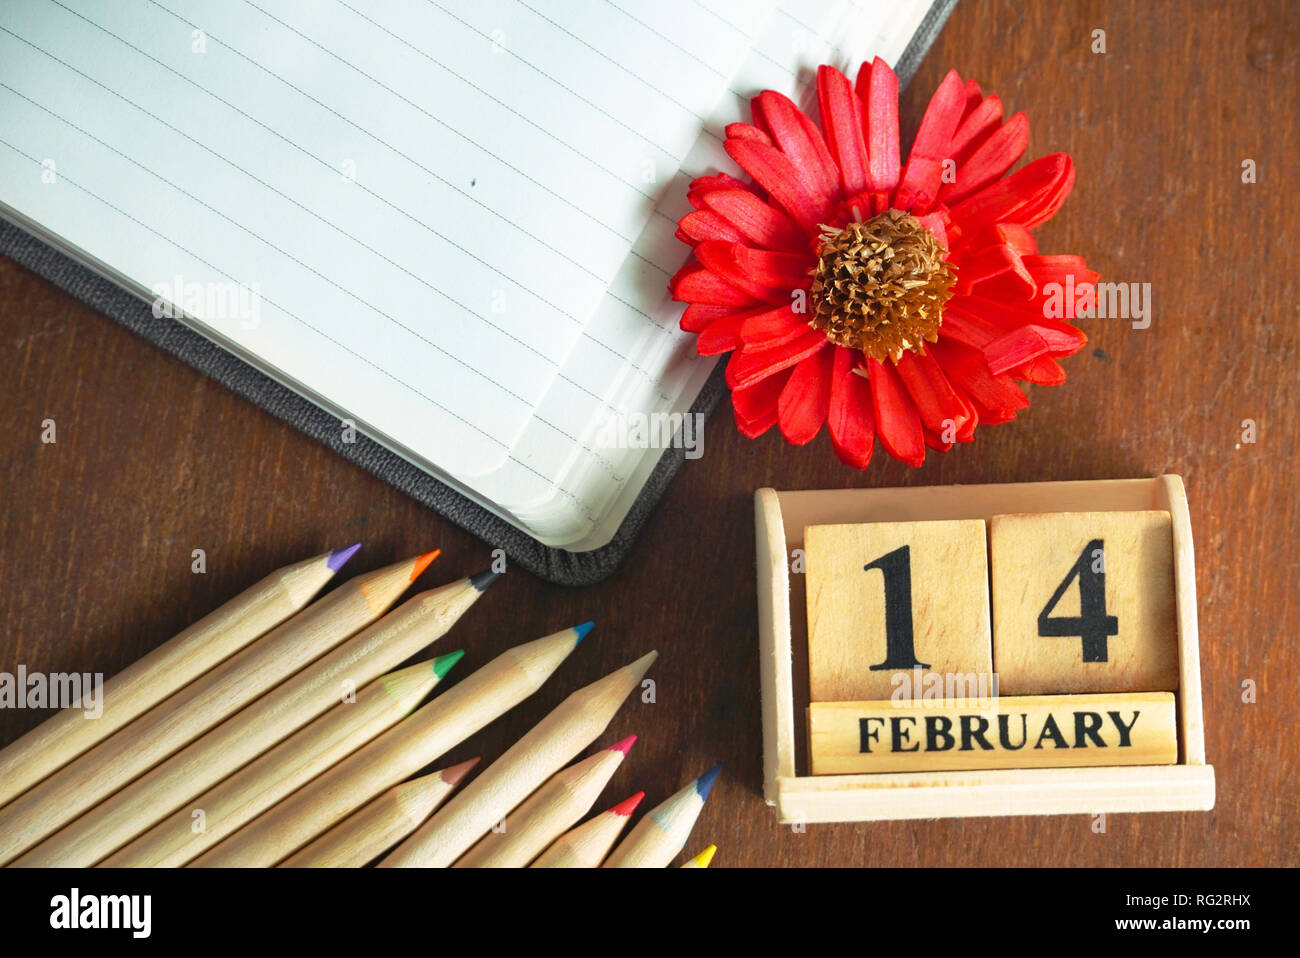 Legno Topview Calendario del 14 febbraio e matite e fiori e diario libro sul tavolo di legno, il concetto di amore. Foto Stock